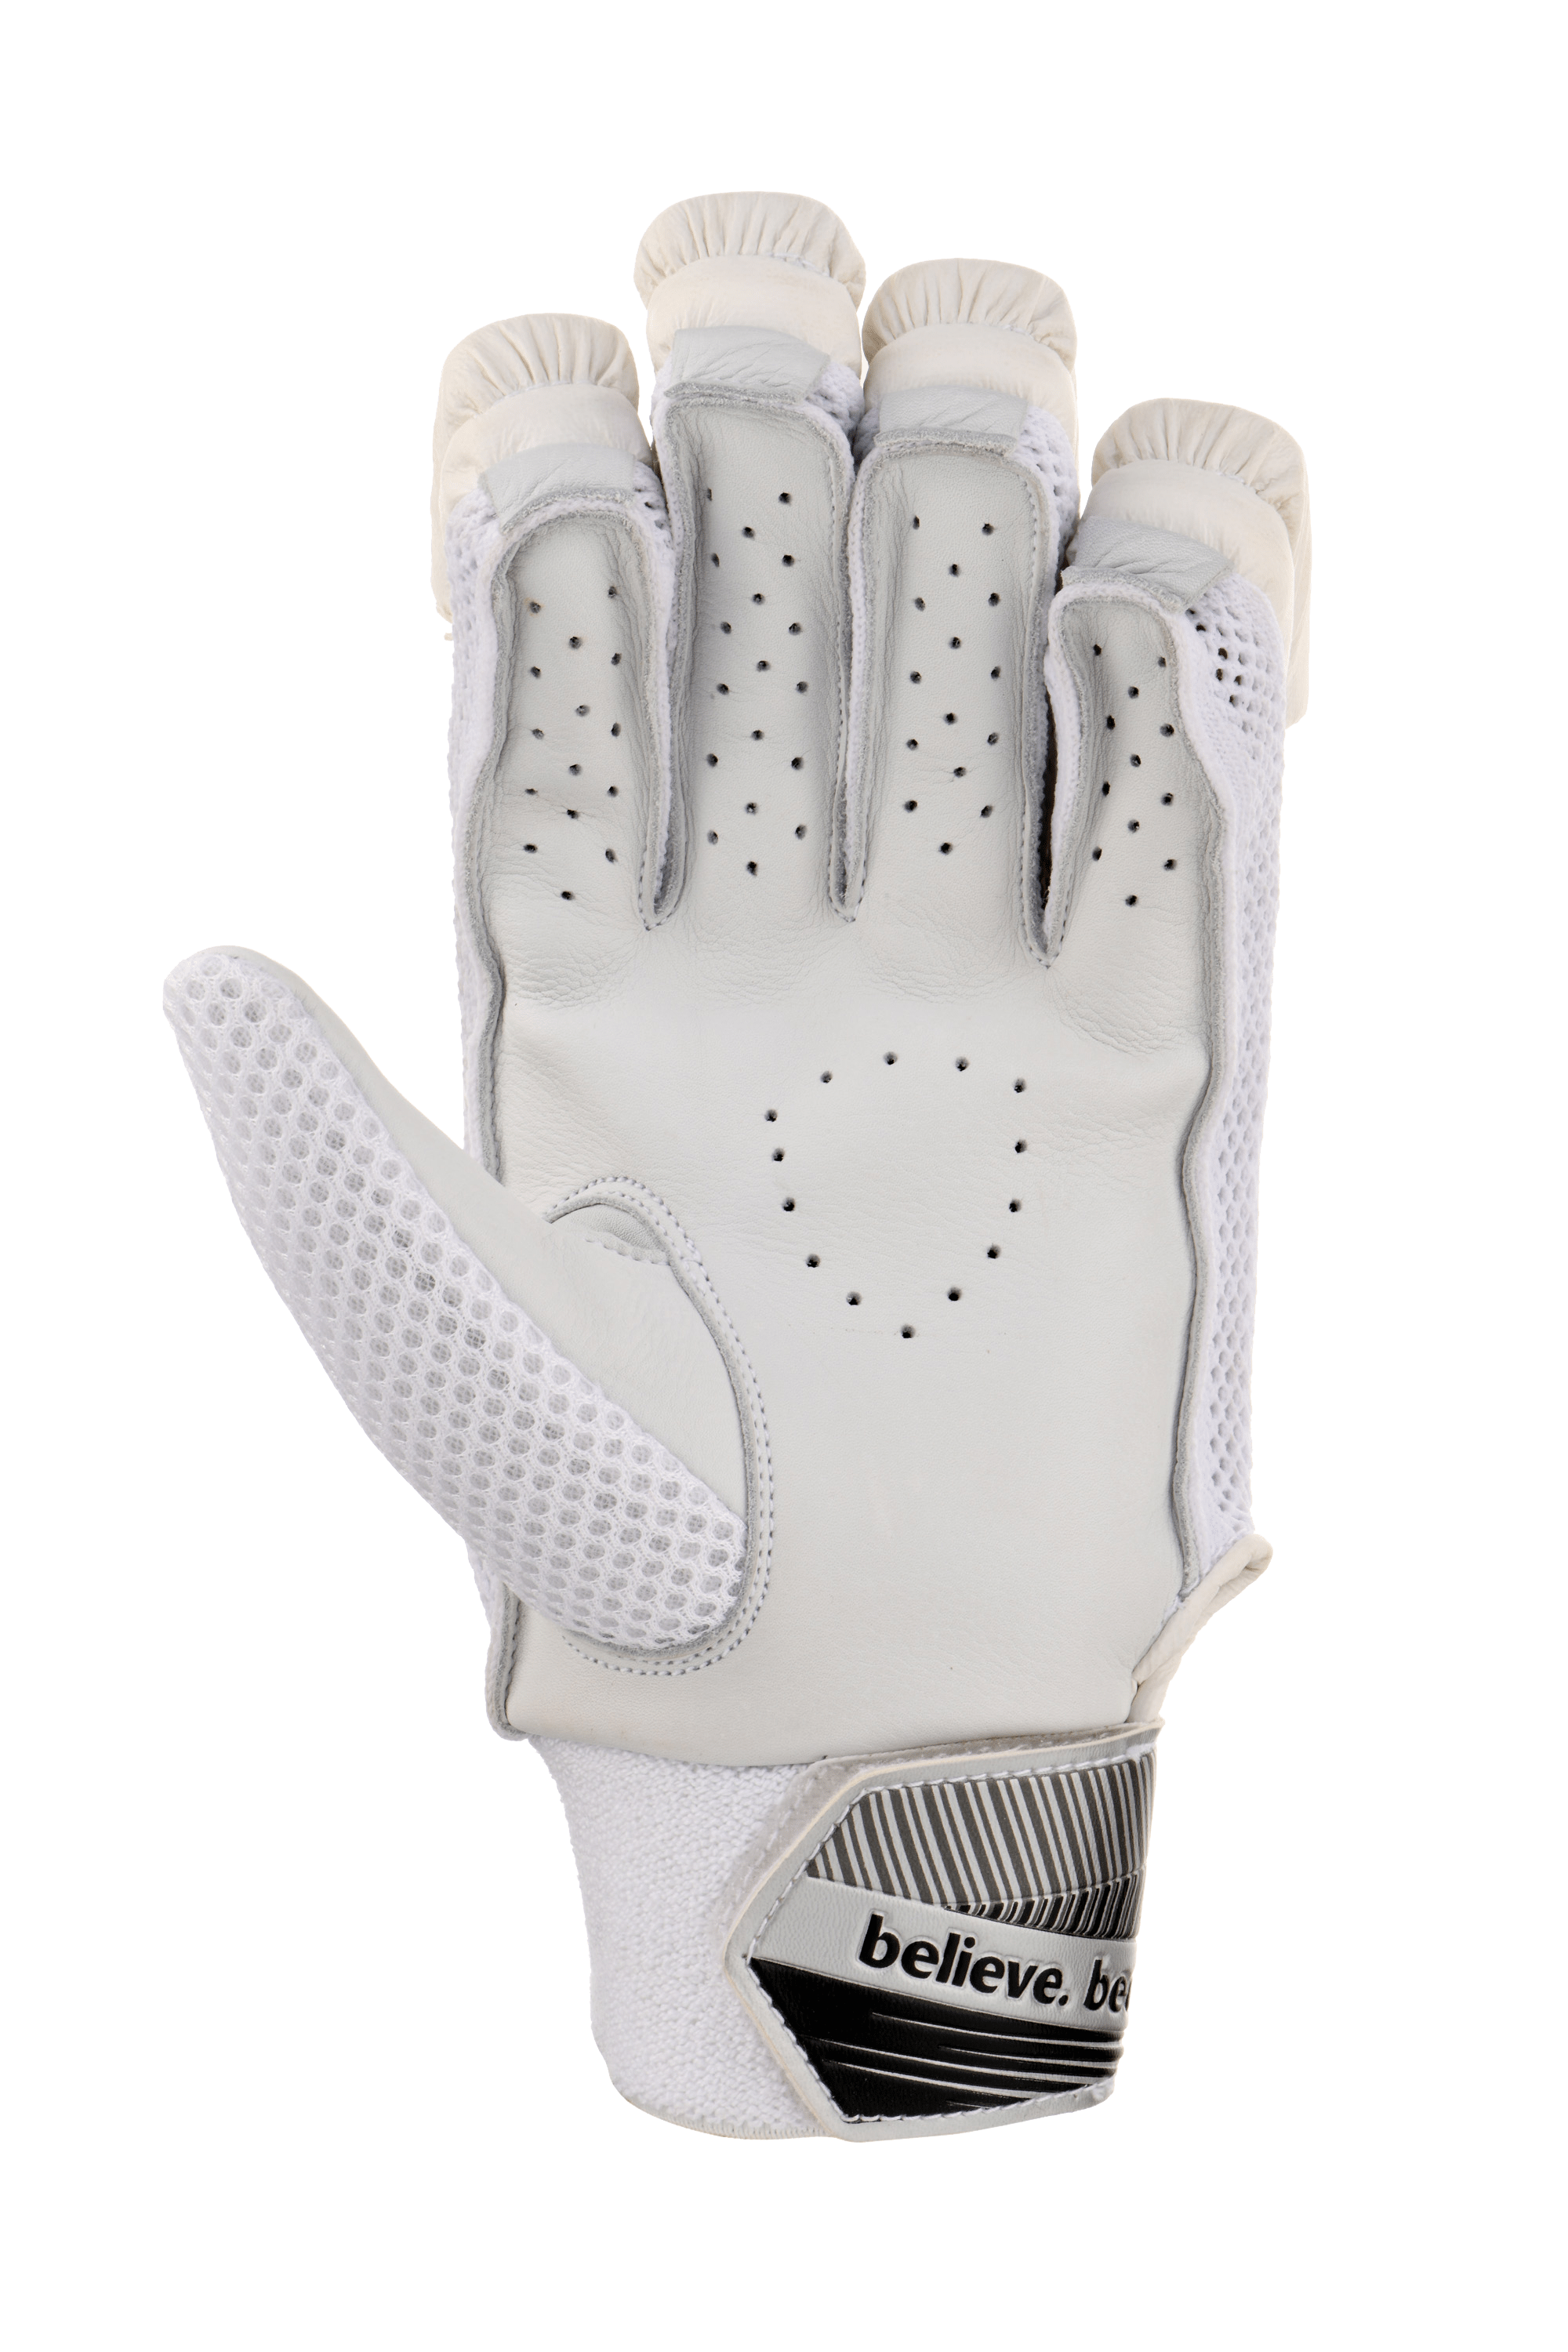 SG Gloves SG Litevate White Adults Cricket Batting Gloves